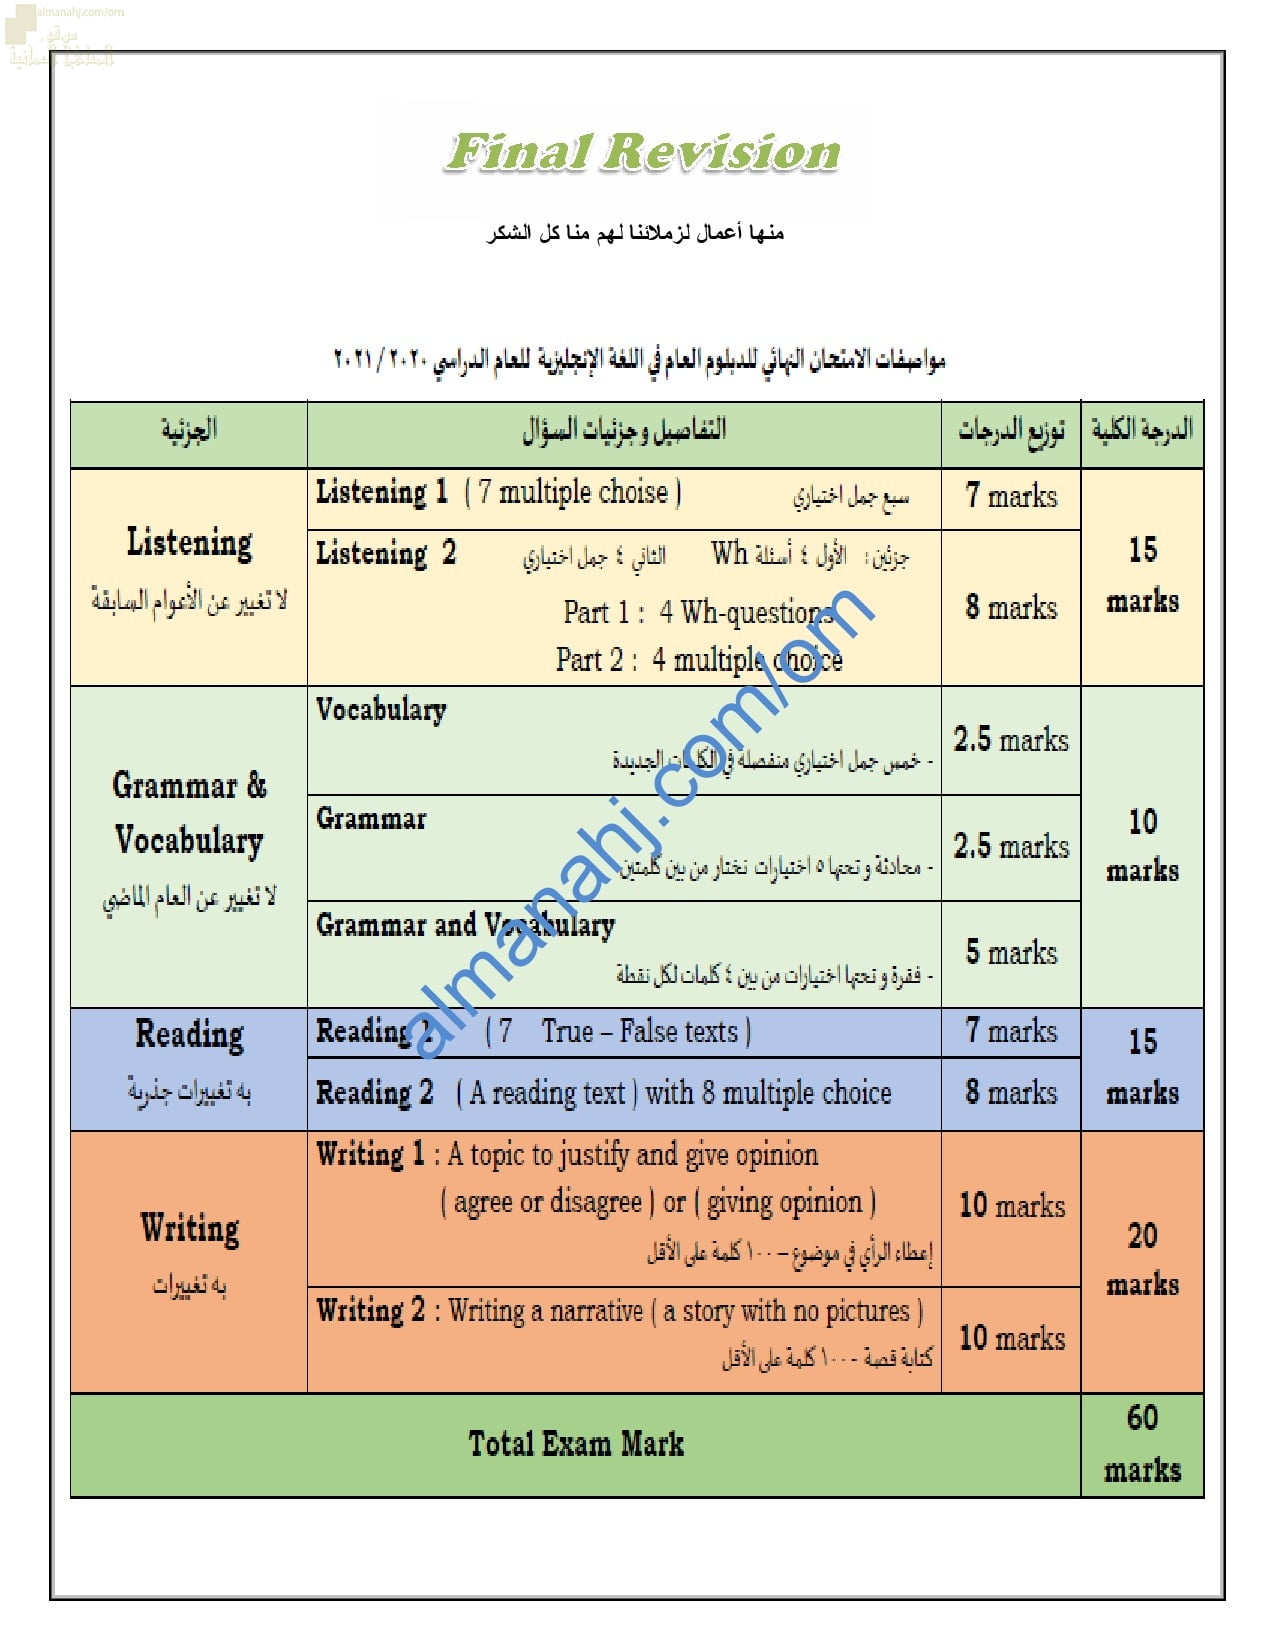 مواصفات الاختبار النهائي مع توزيع الدرجات الامتحانية مع المفردات المطلوبة للاختبار النهائي (لغة انجليزية) الثاني عشر